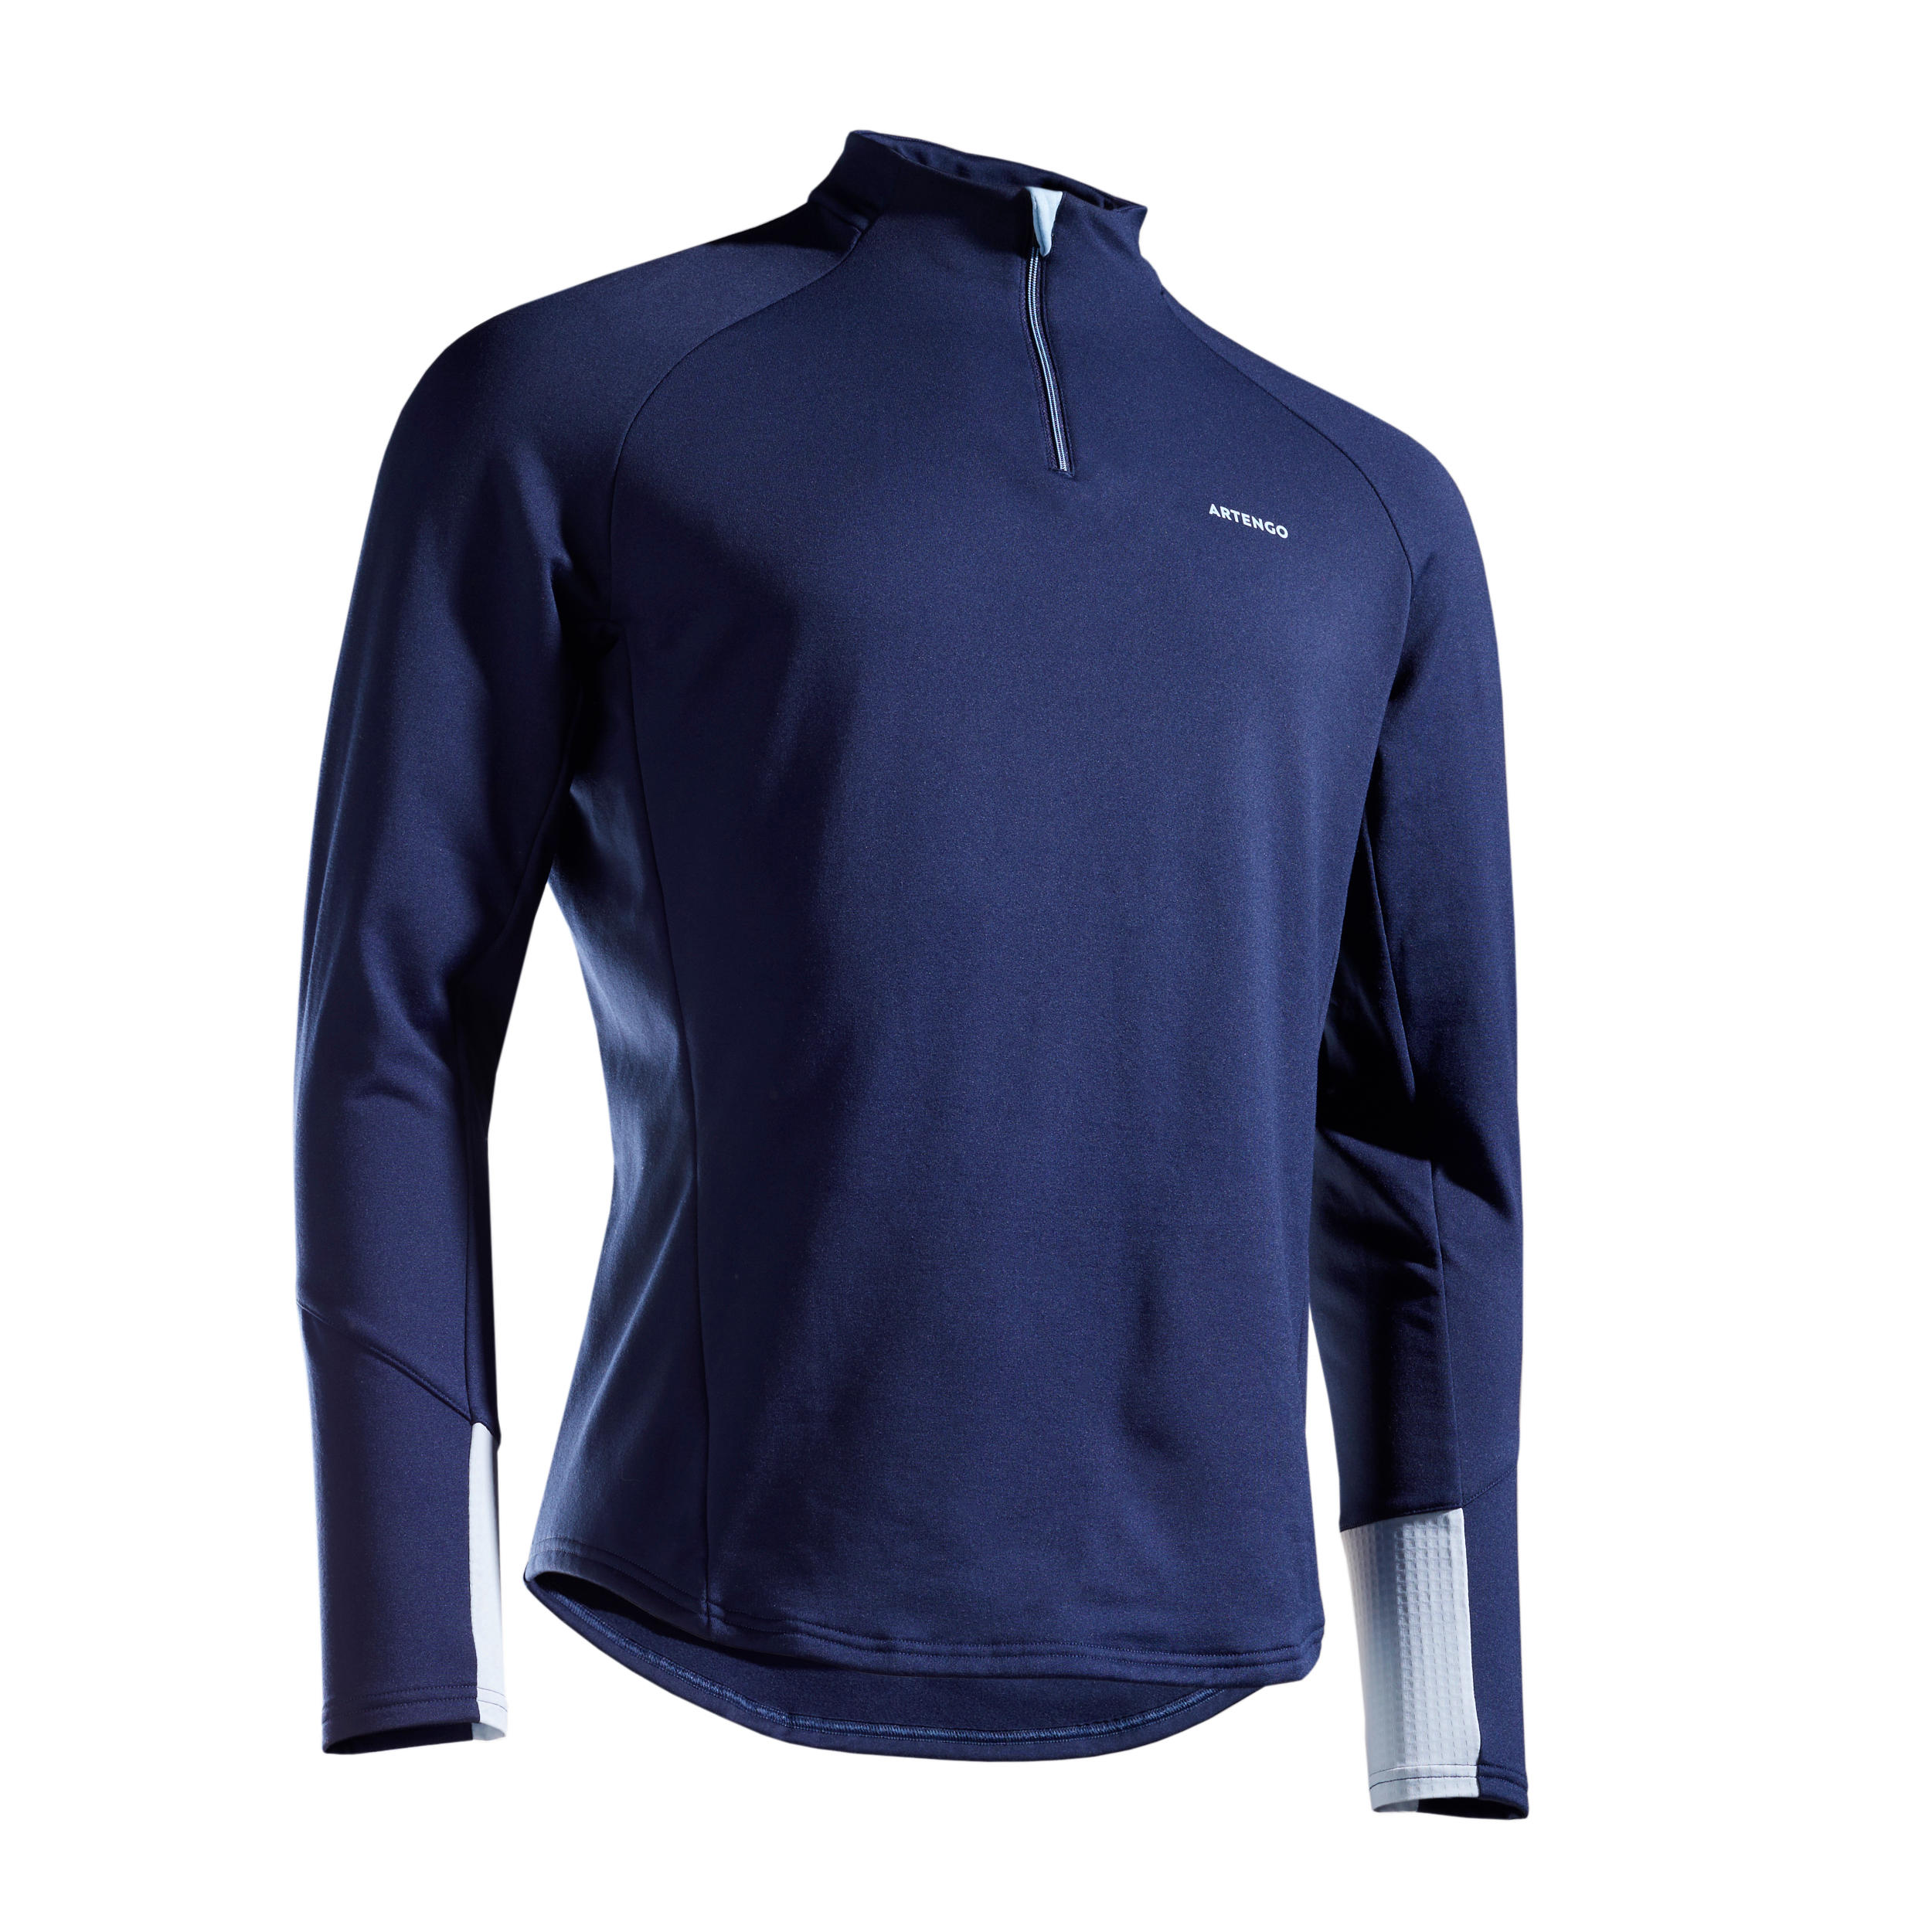 Men's Half-Zip Long-Sleeved Thermal Tennis Sweatshirt - Navy Blue 8/8